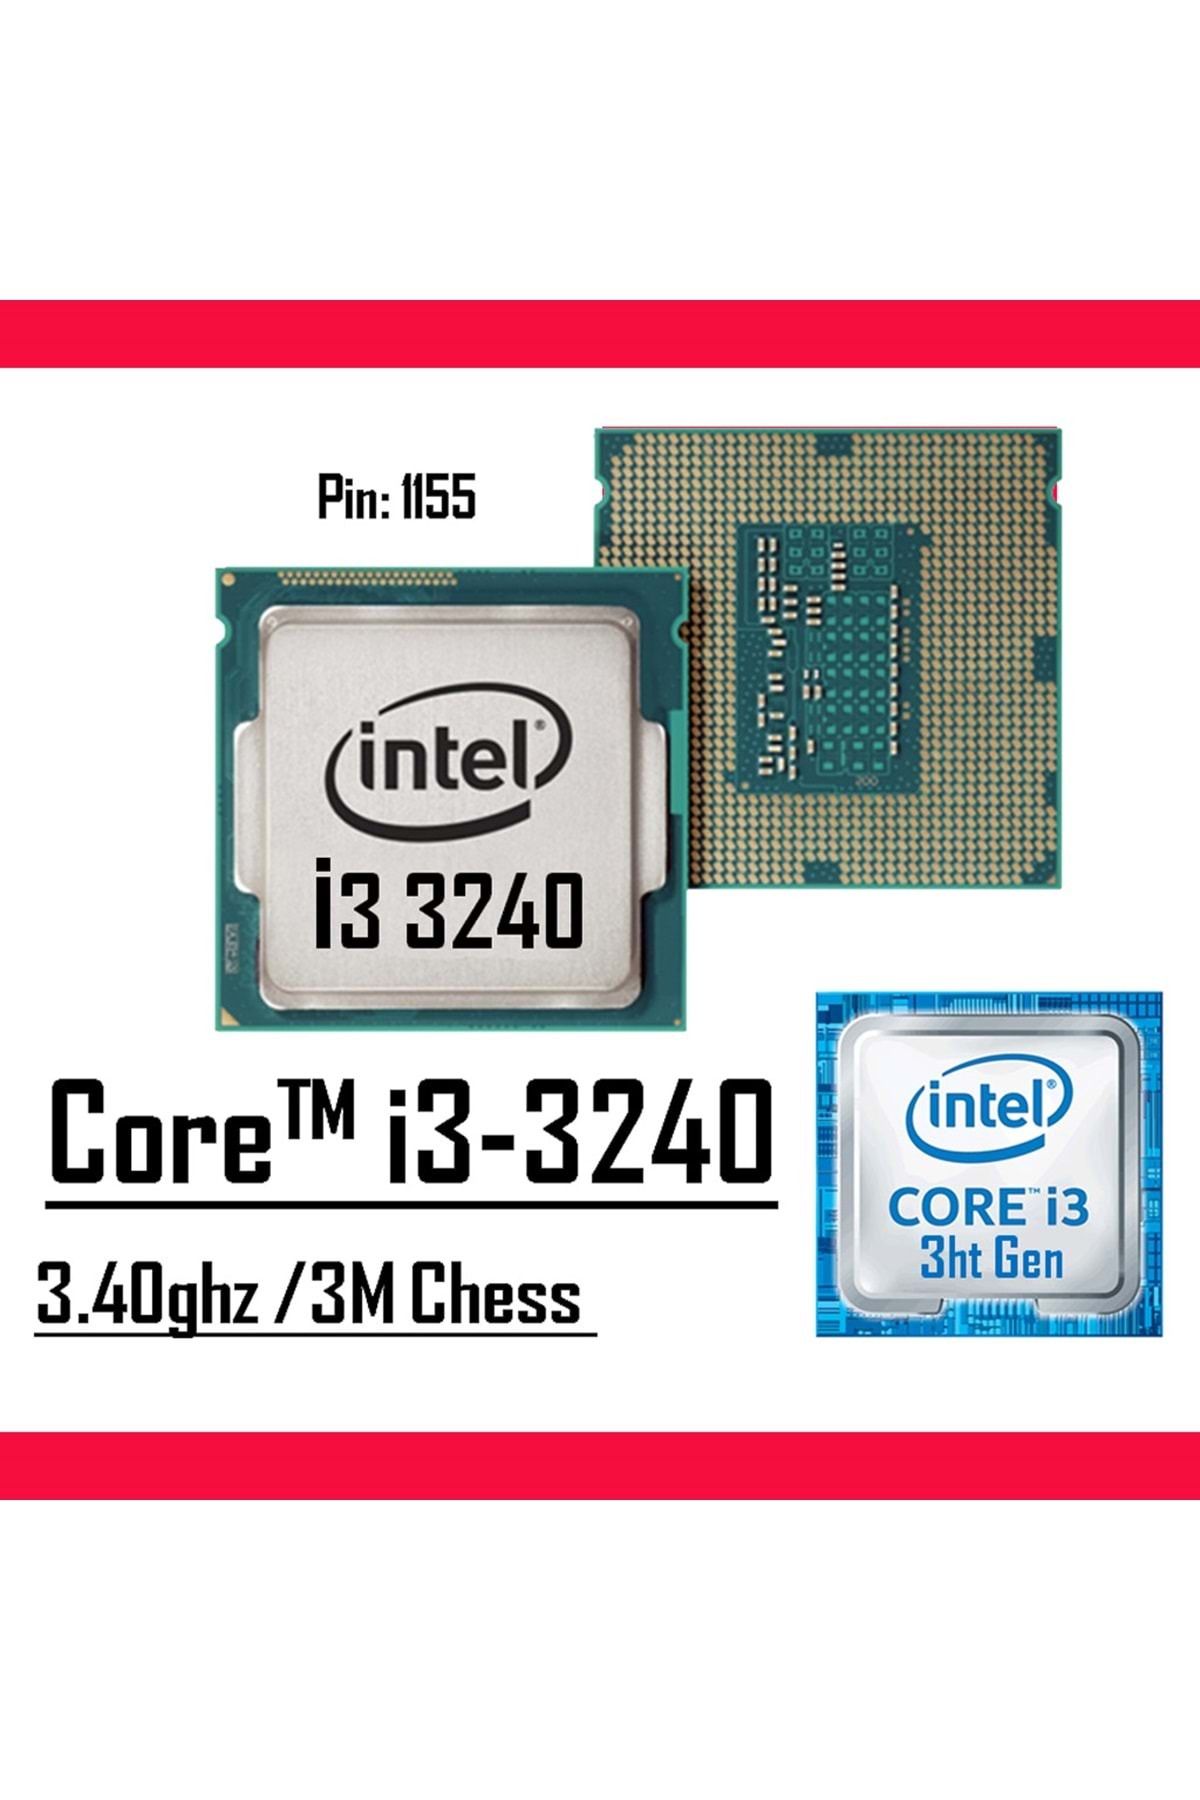 Intel ® Core™ i3-3240 Processor3M Cache, 3.40 GHz